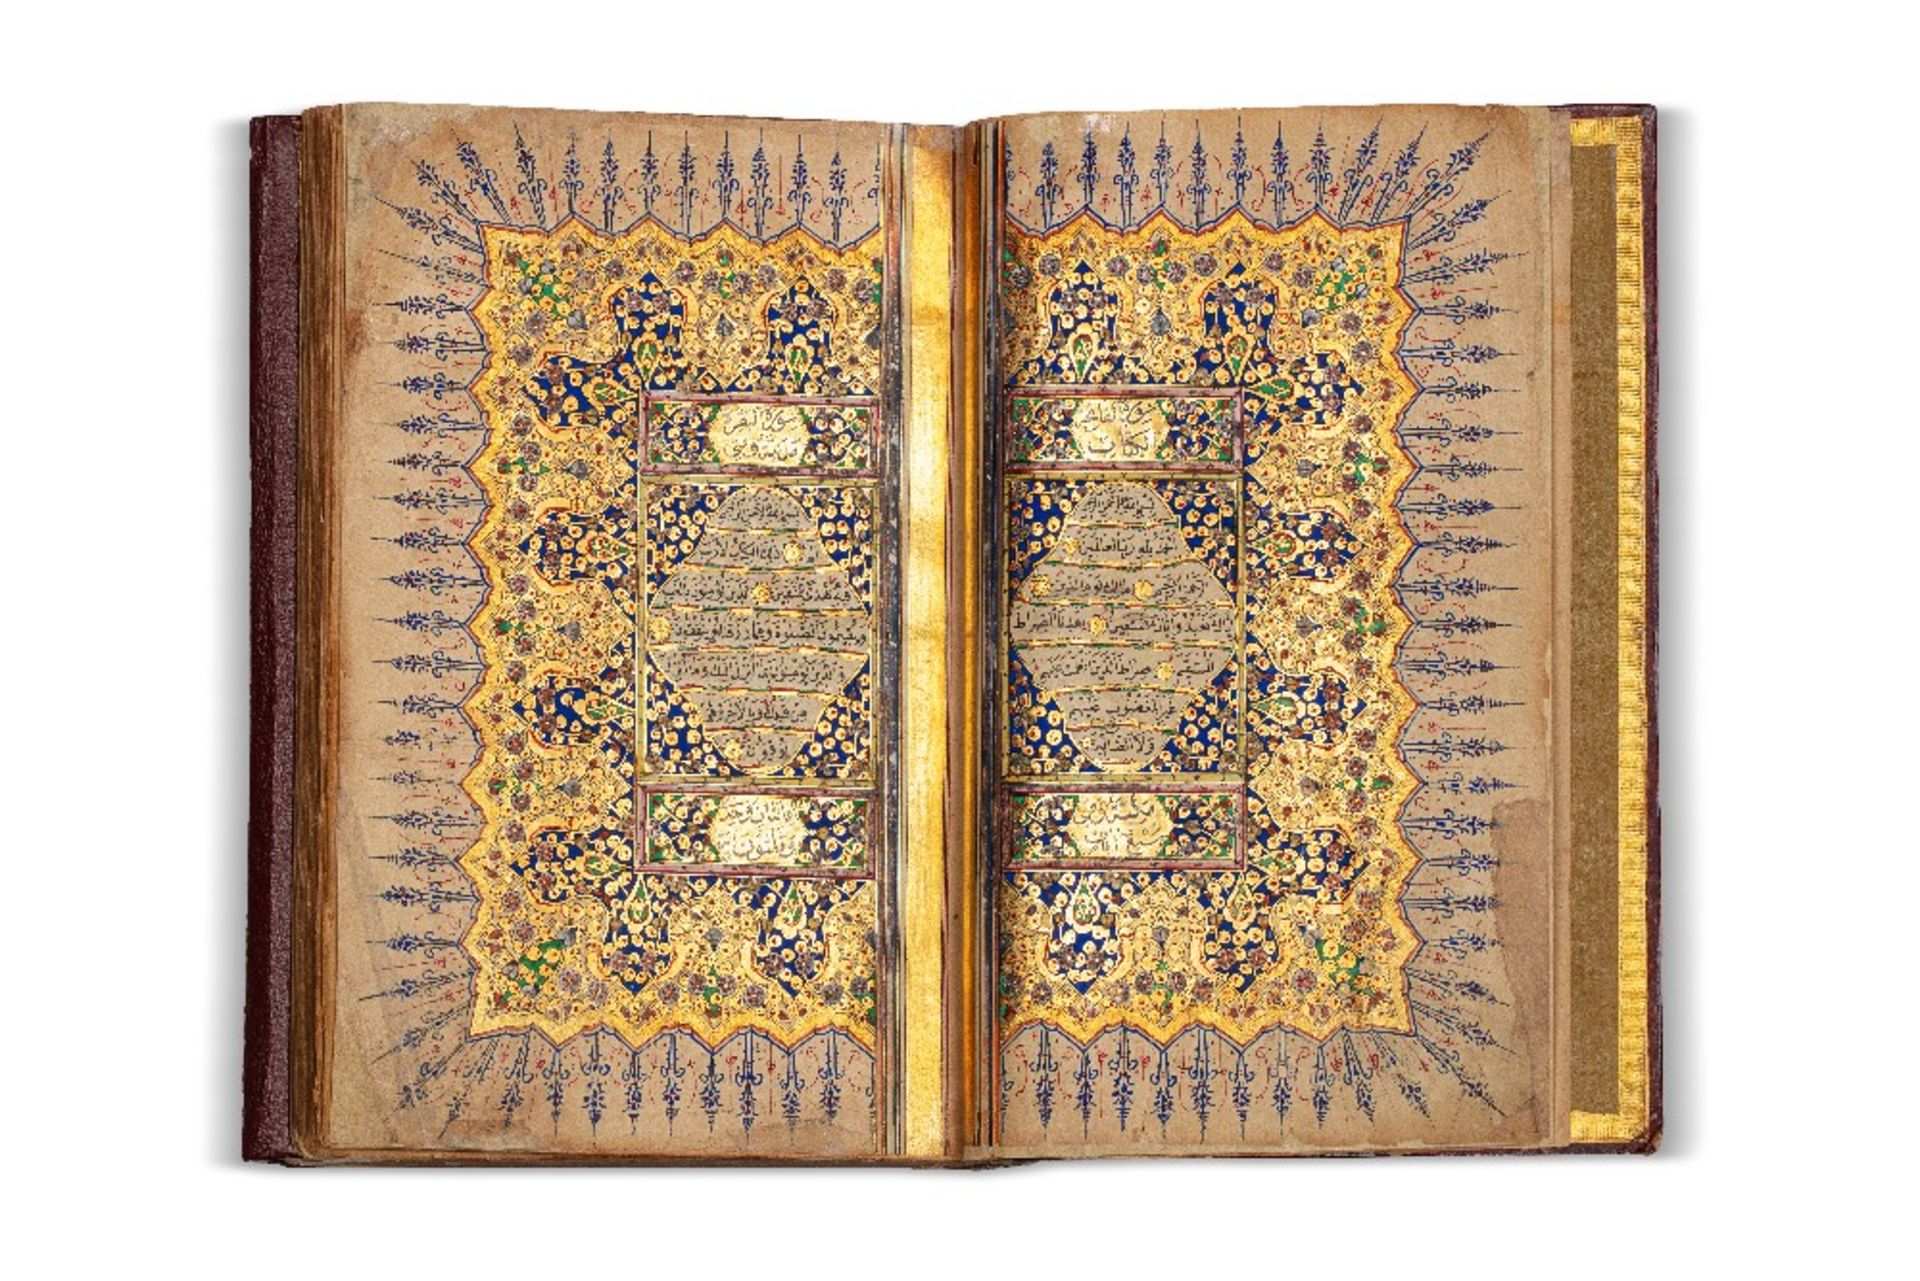 Coran ottoman copié par Omar al-ZuhdiTurquie, daté 1264H. (=1847)Manuscrit arabe sur papier, 287